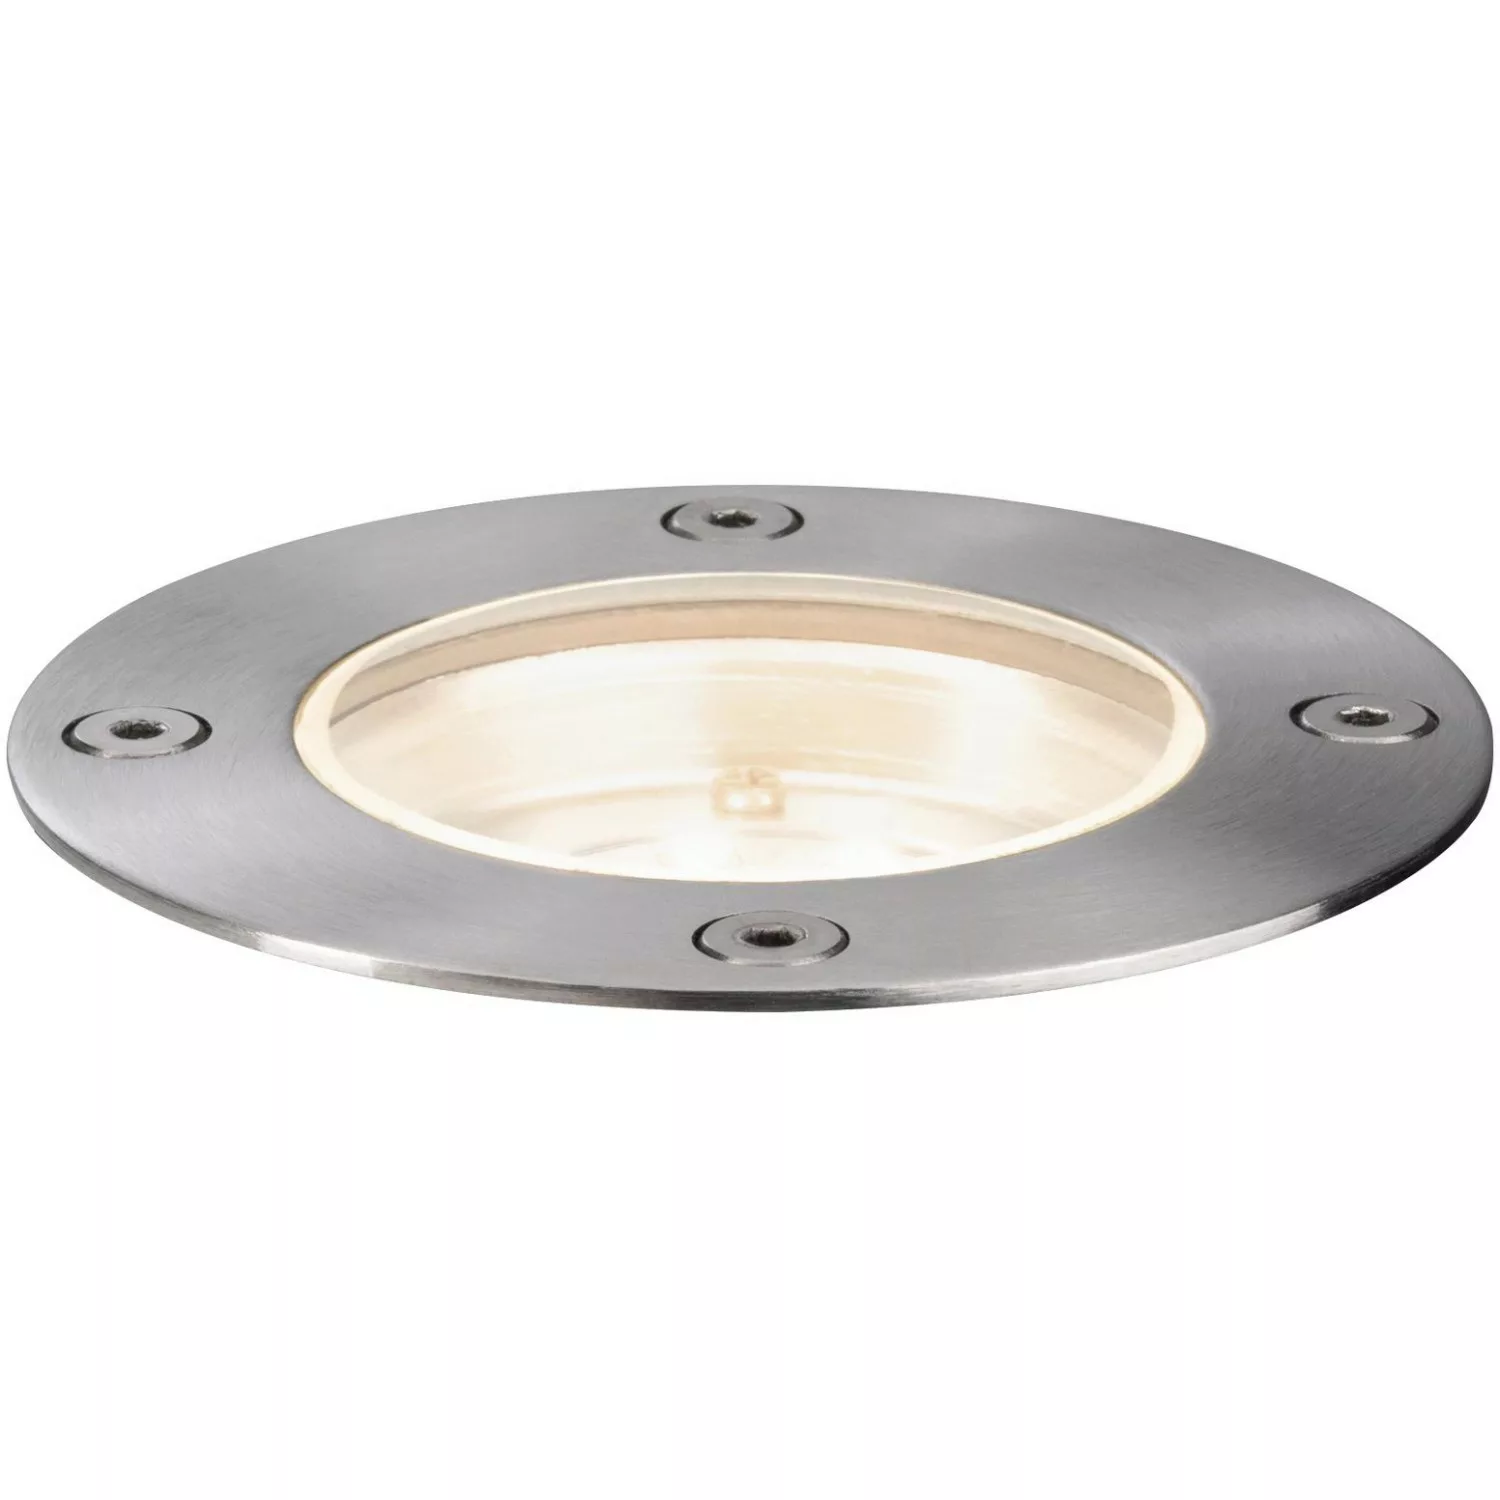 Paulmann Plug & Shine LED-Bodeneinbauleuchte 94228 günstig online kaufen